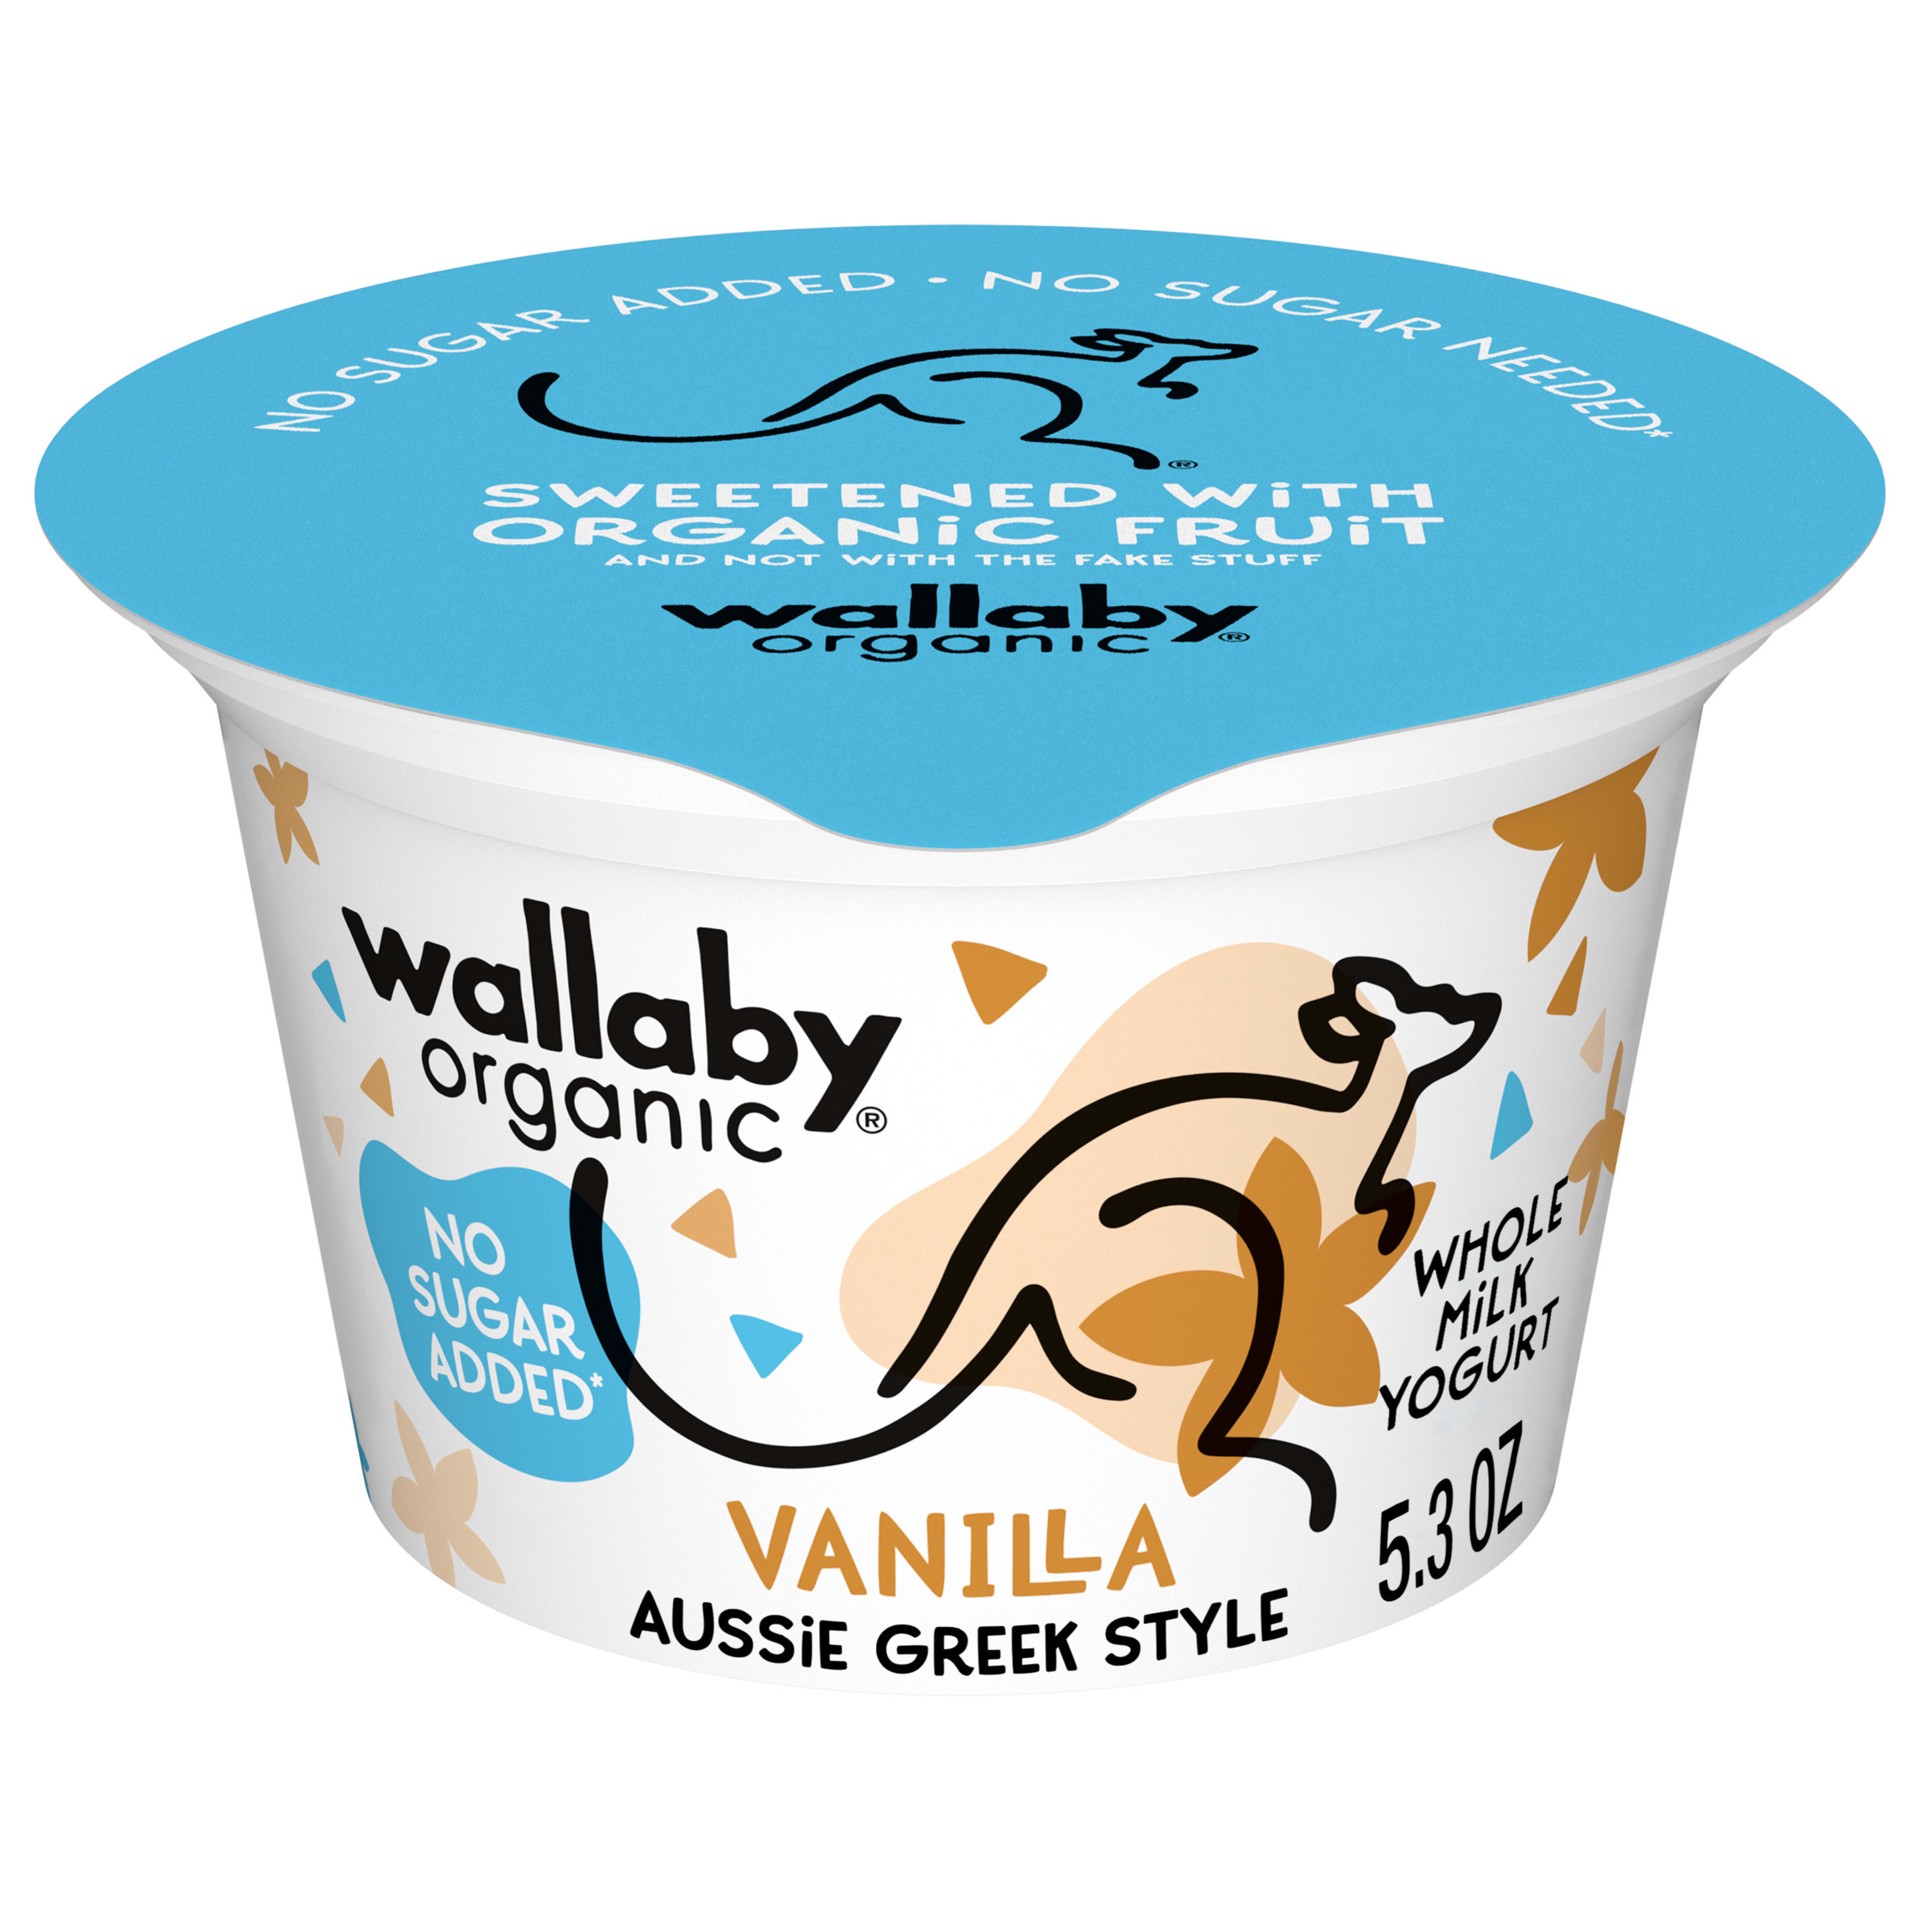 slide 1 of 7, Wallaby Organic Aussie Greek Yogurt, No Sugar Added, Vanilla Chai, USDA Organic, 5.3 oz. Cup, 5.3 oz